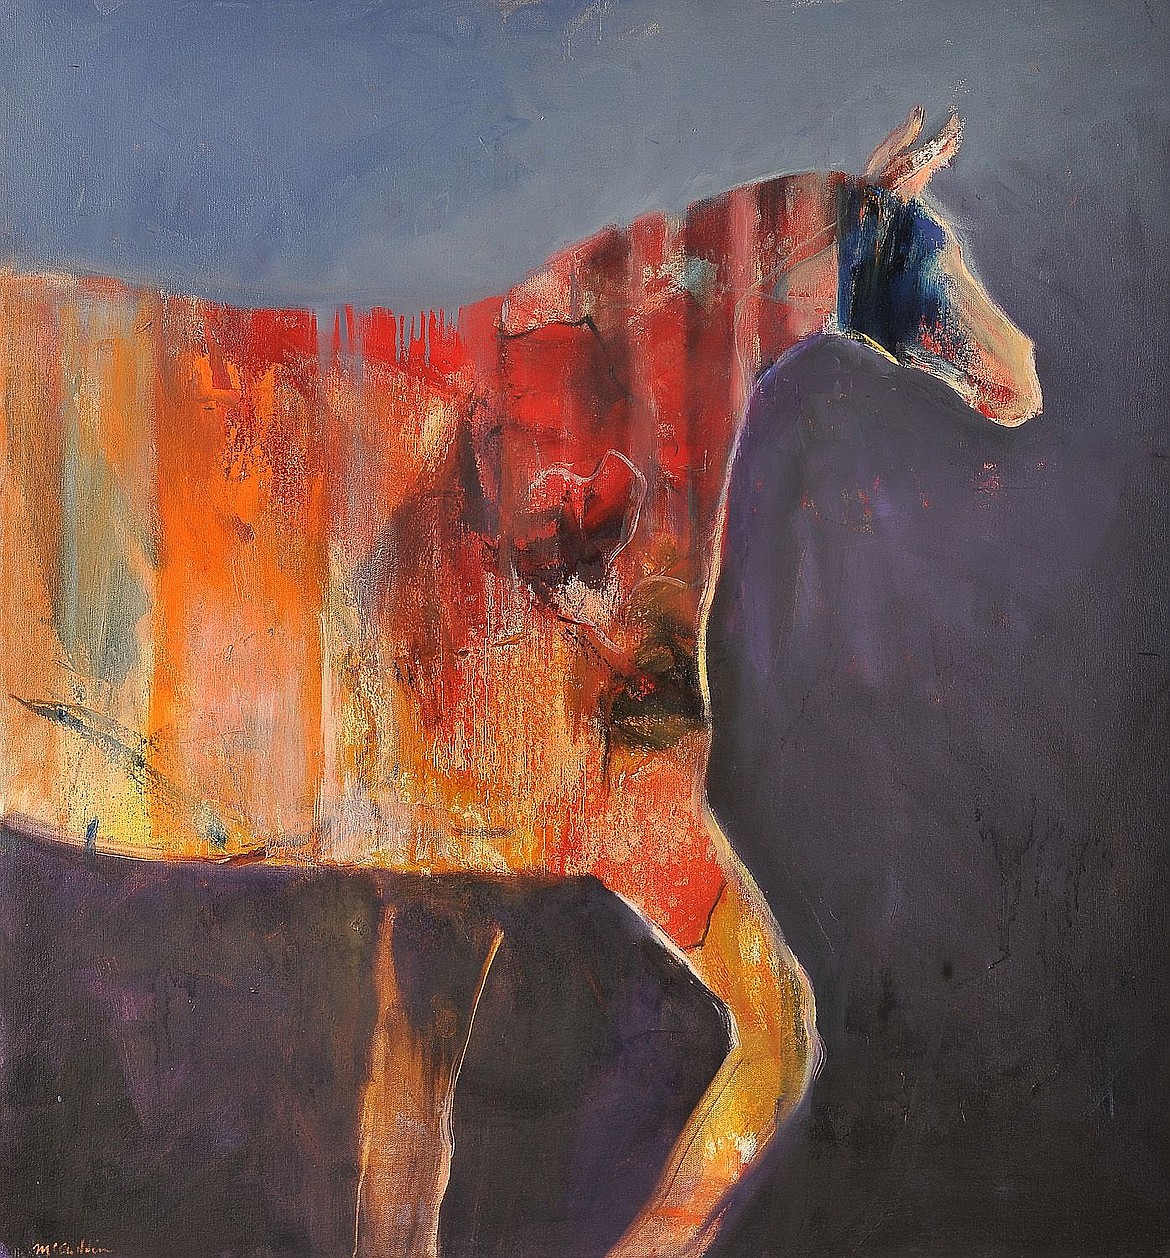 &#147;Trojan Horse&#148;
Mel McCuddin, 2018
Oil, 20 x 28 inches